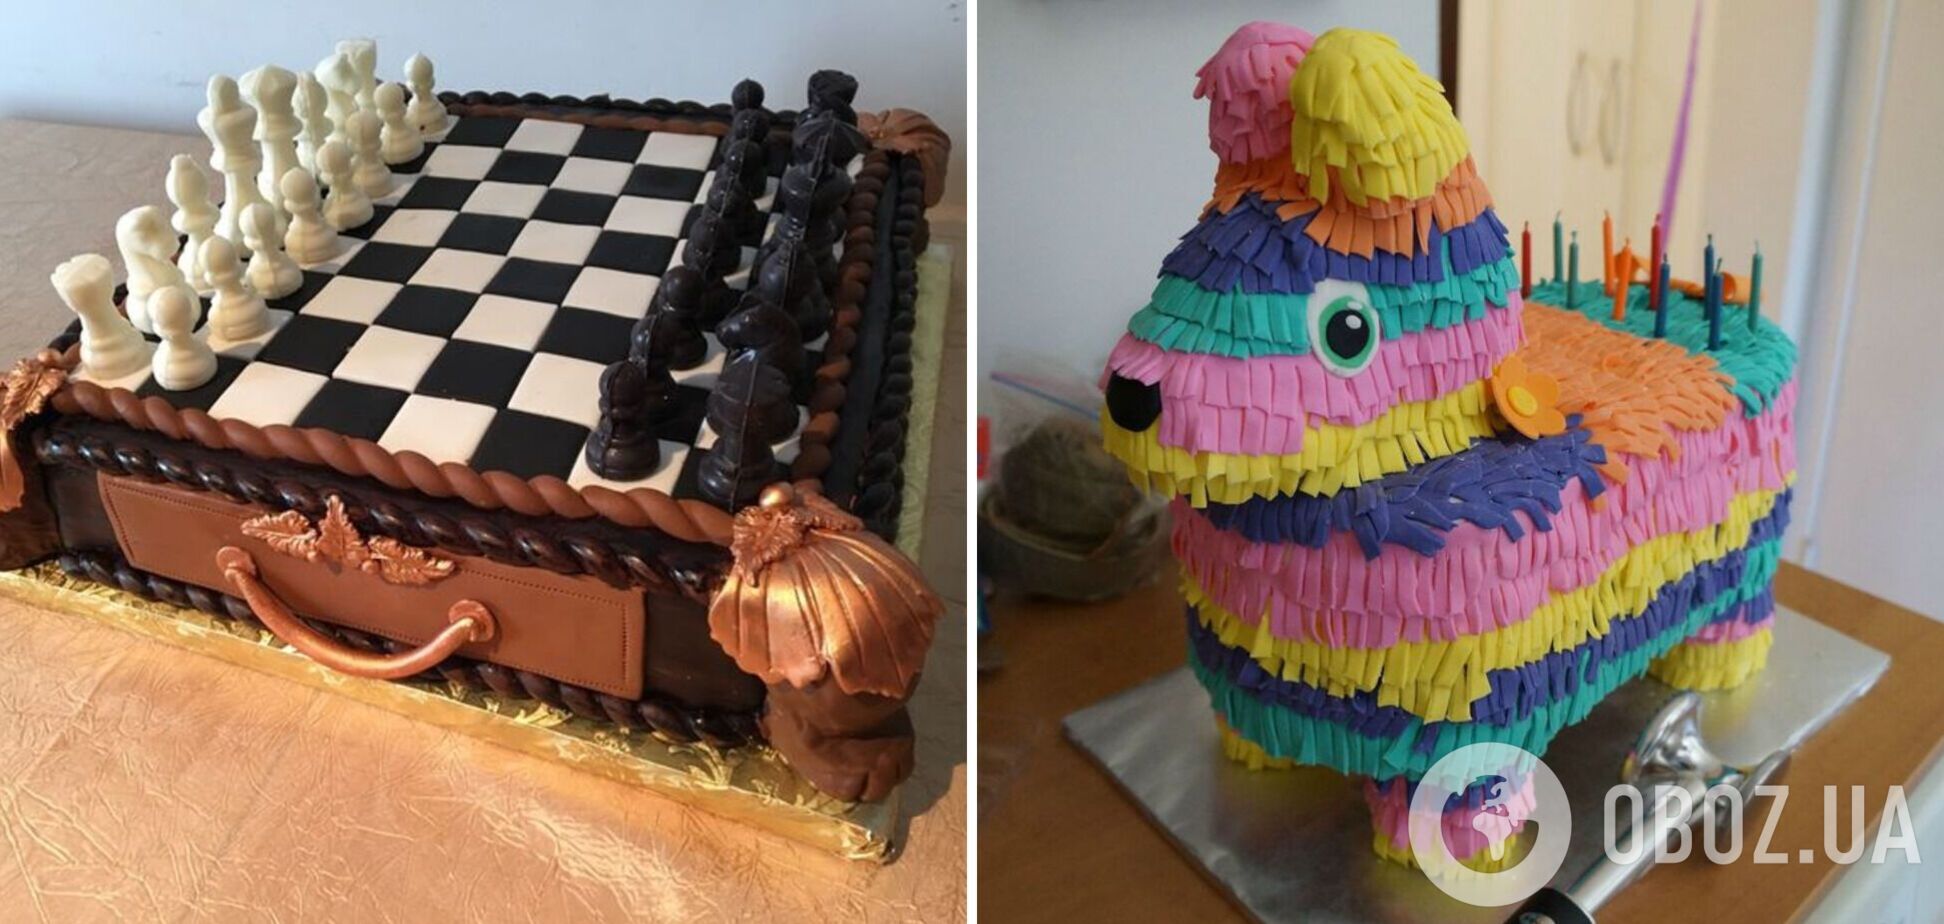 Торт в виде игральных шахмат и яркий торт-пиньята